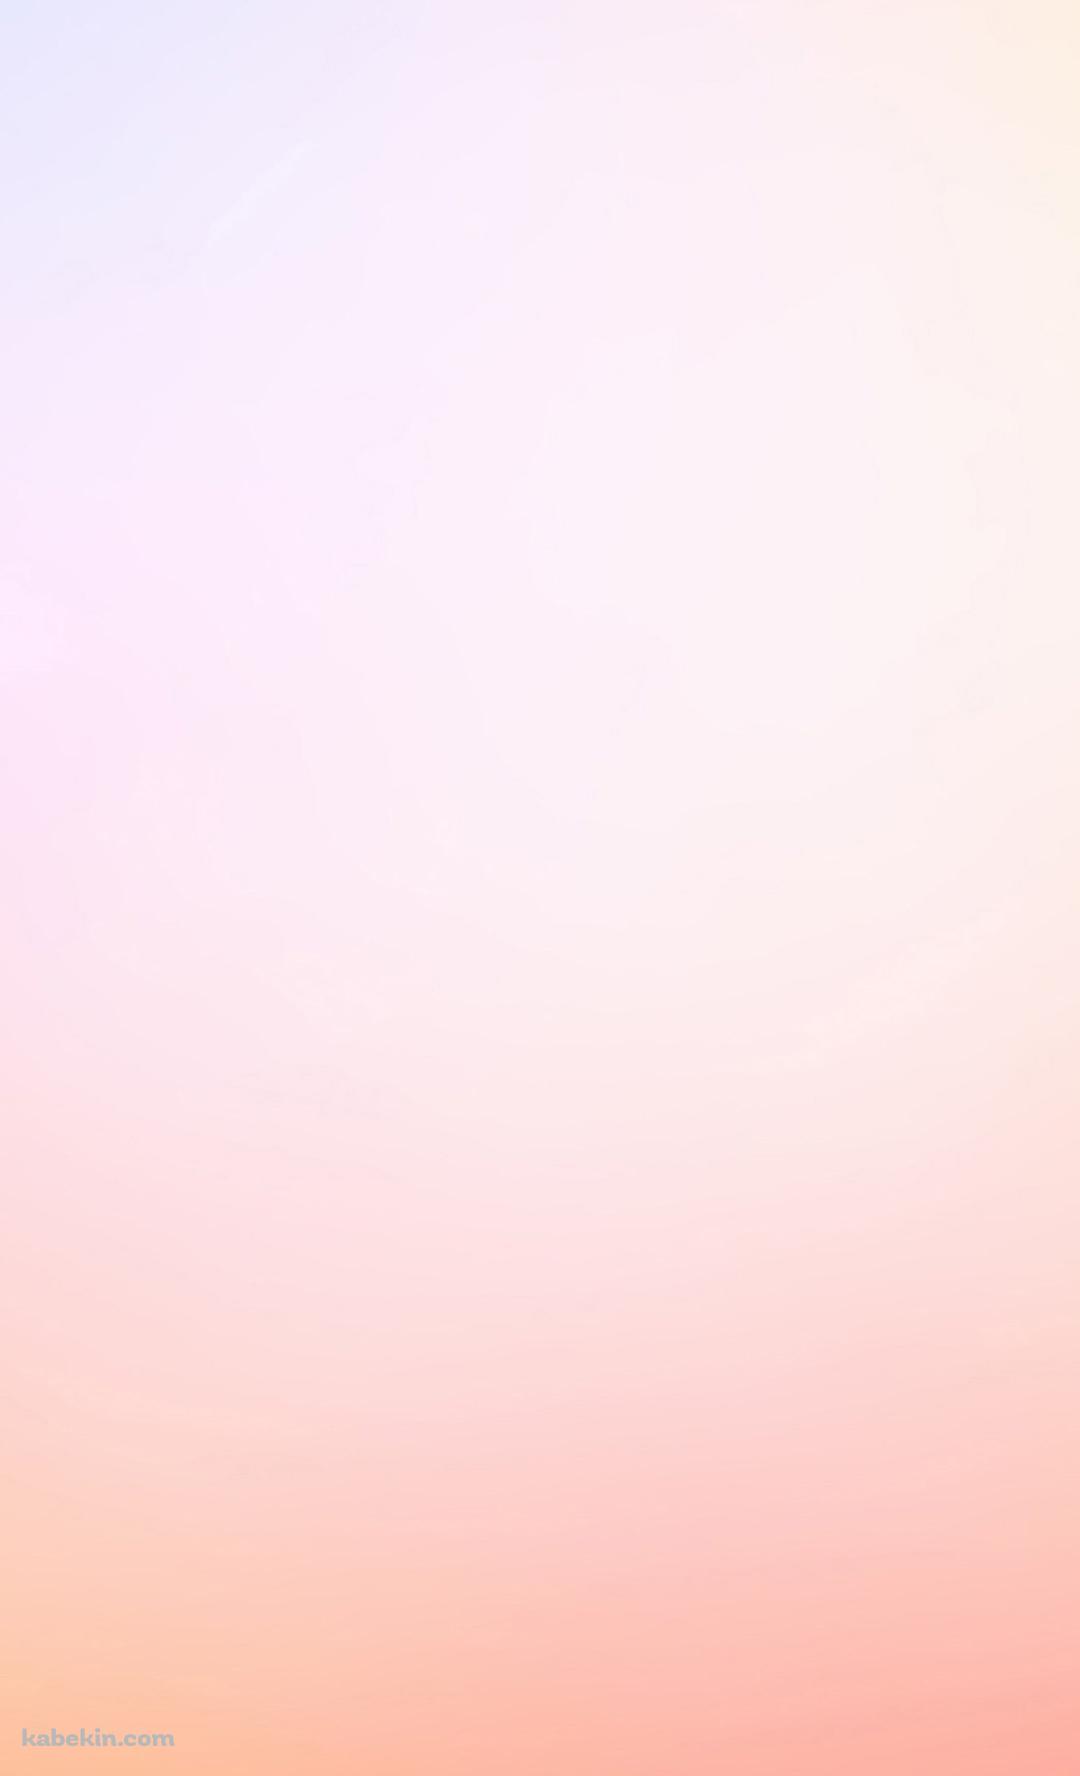 淡いピンクのグラデーションのandroid壁紙 1080 X 1776 壁紙キングダム スマホ版